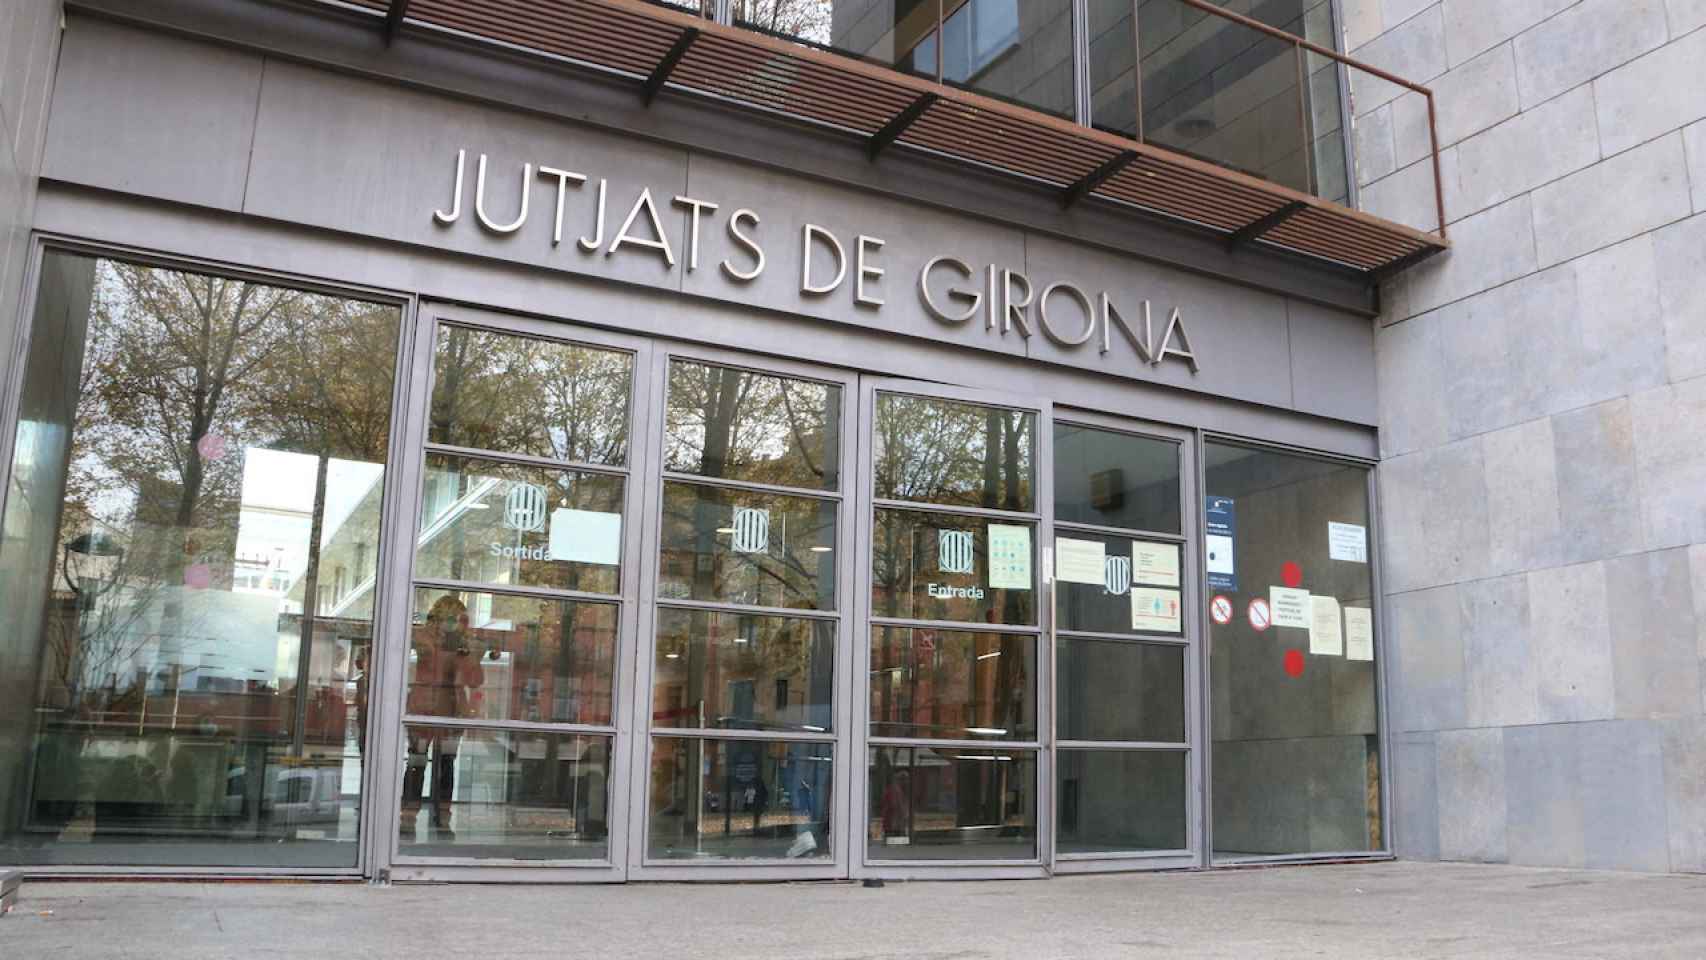 Acceso a los Juzgados de Girona, donde pasaron los hechos